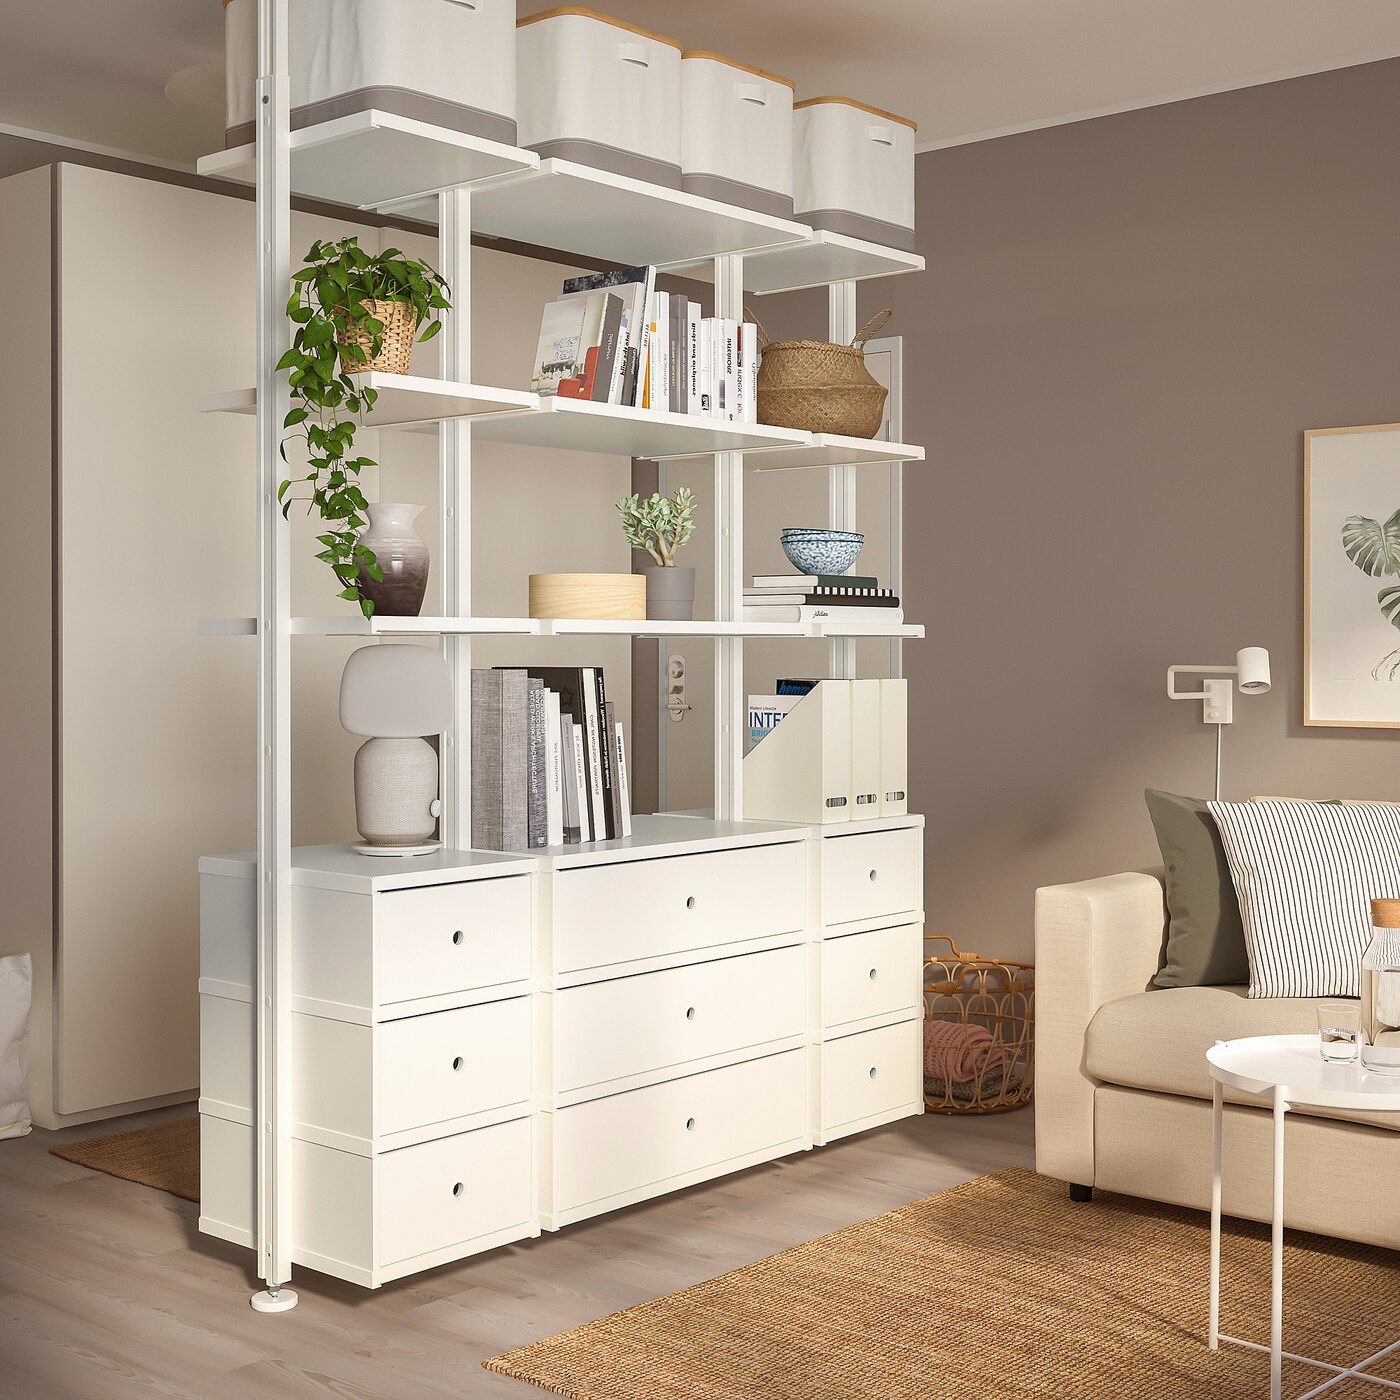 Ramkoers motto satelliet 5x IKEA room divider inspiratie voor in huis - Happy House Number